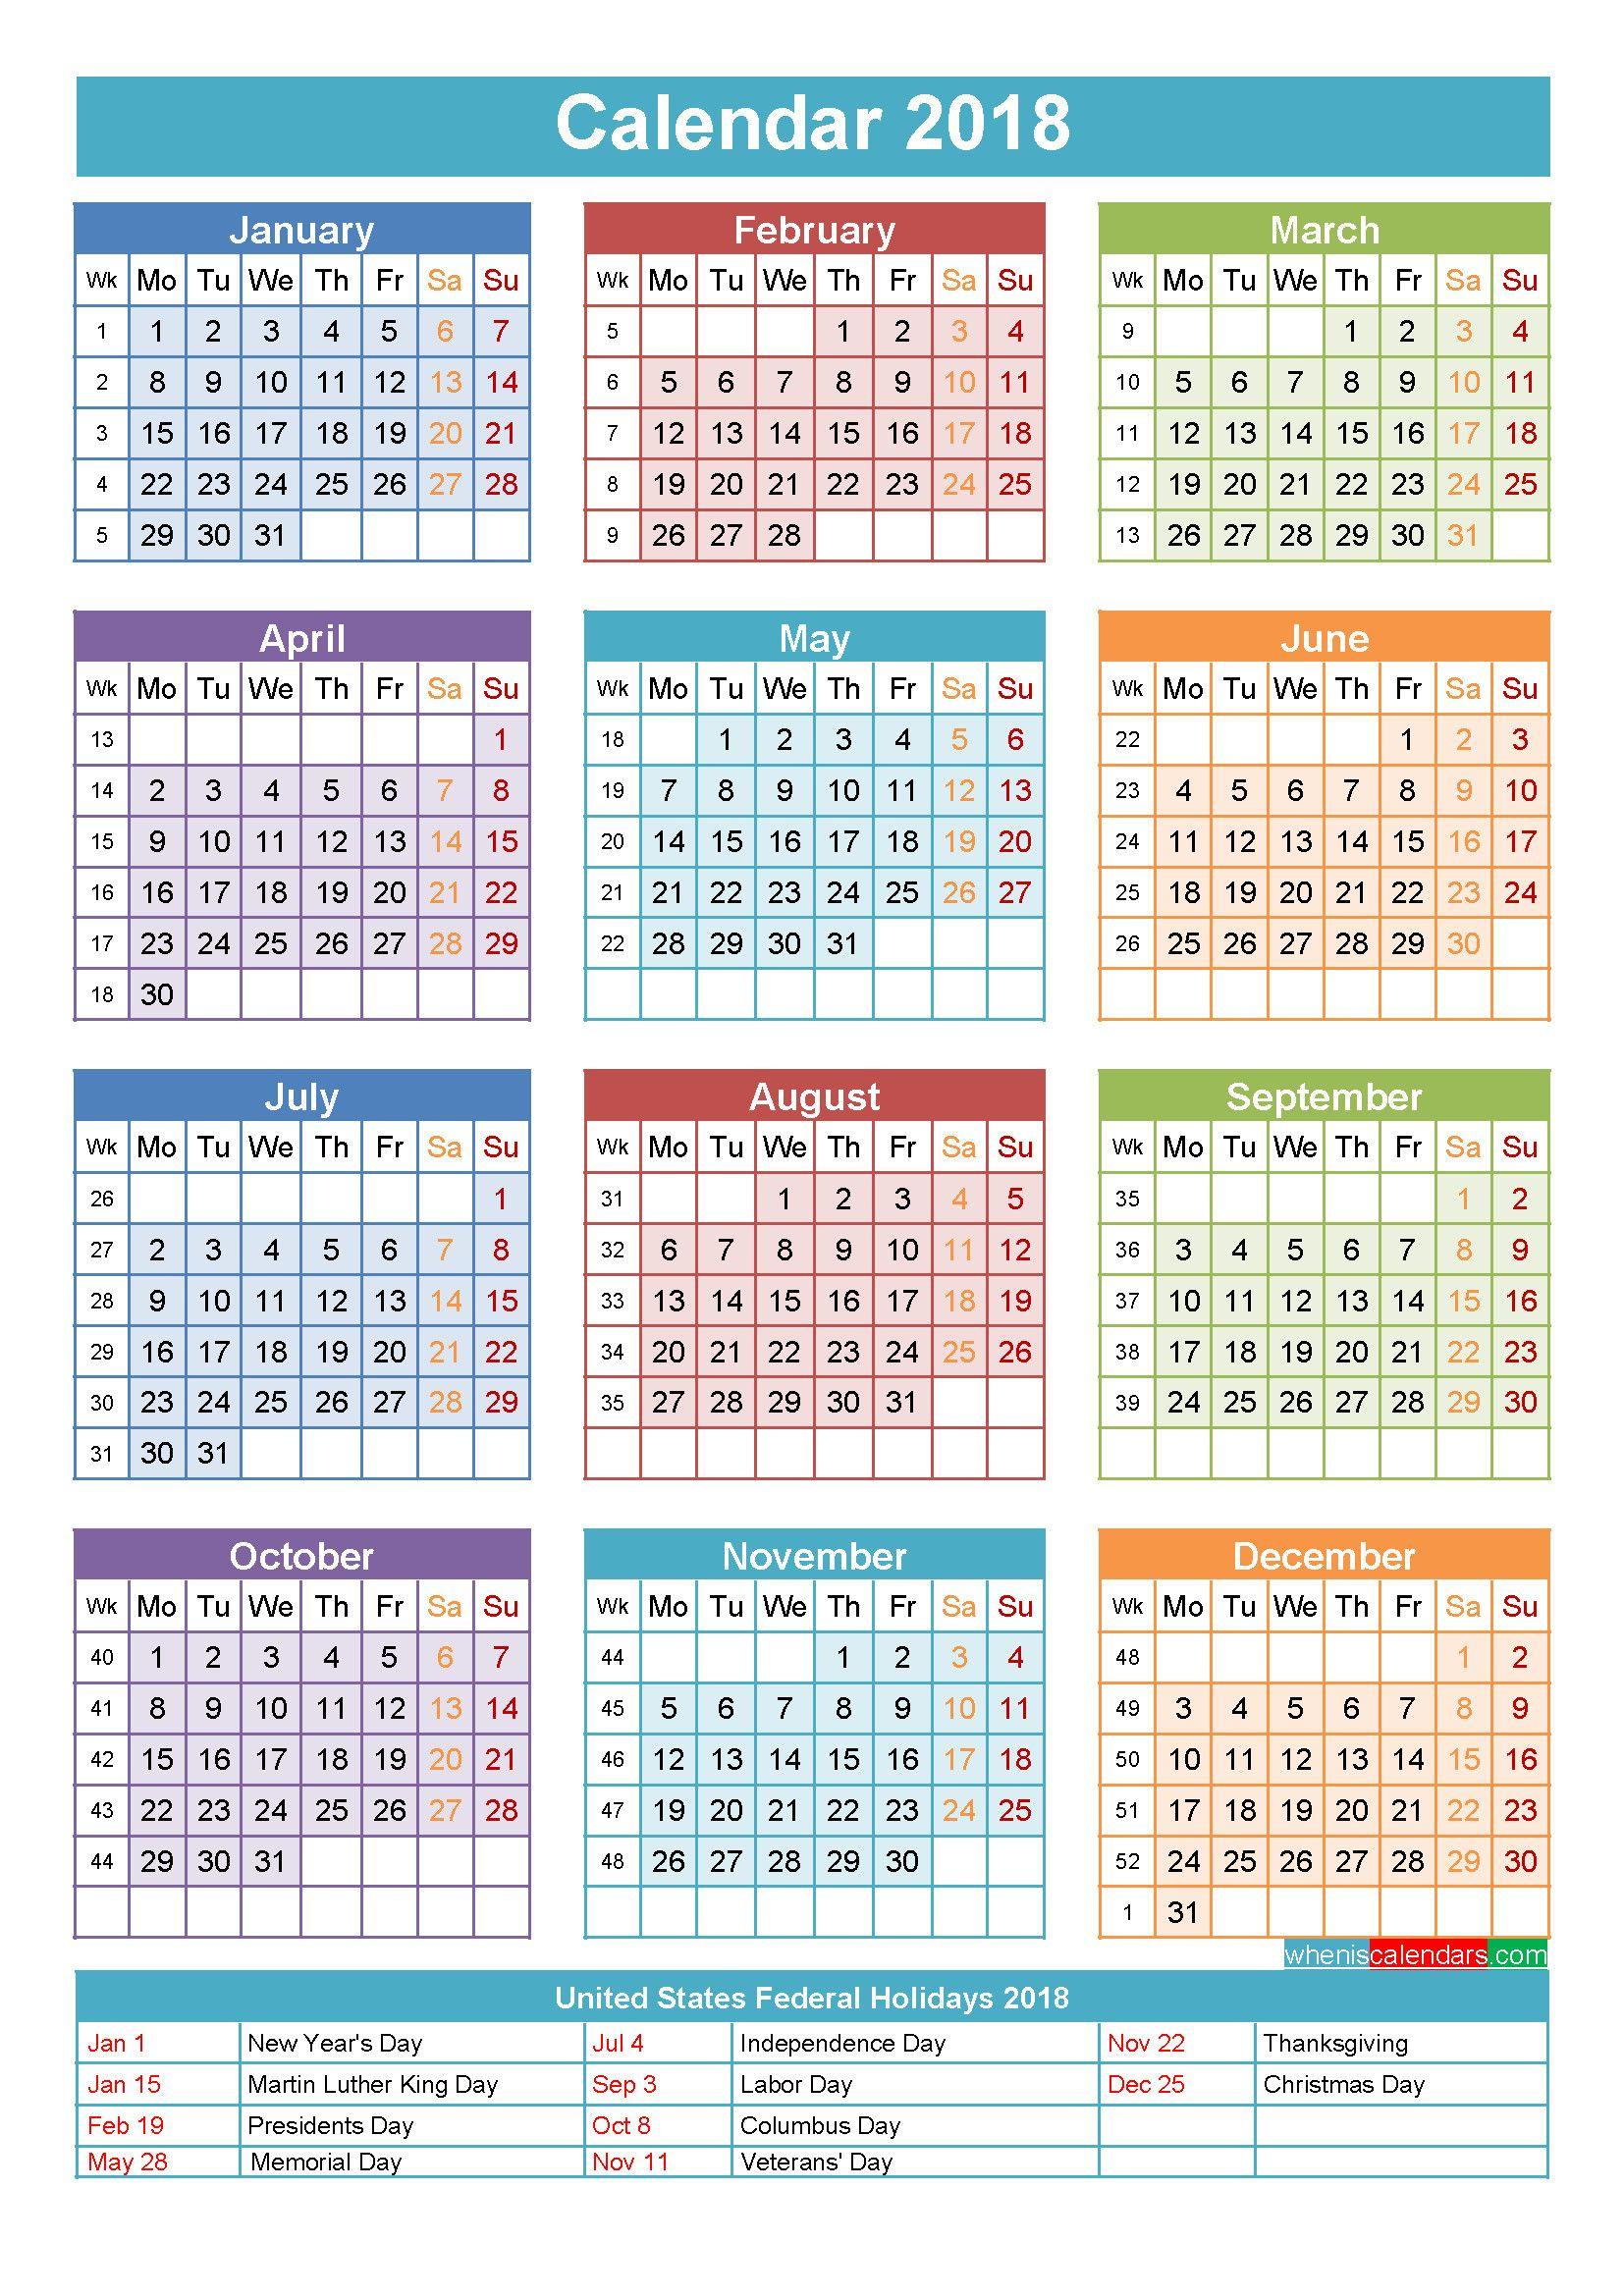 Wallpaper with Calendar 2018